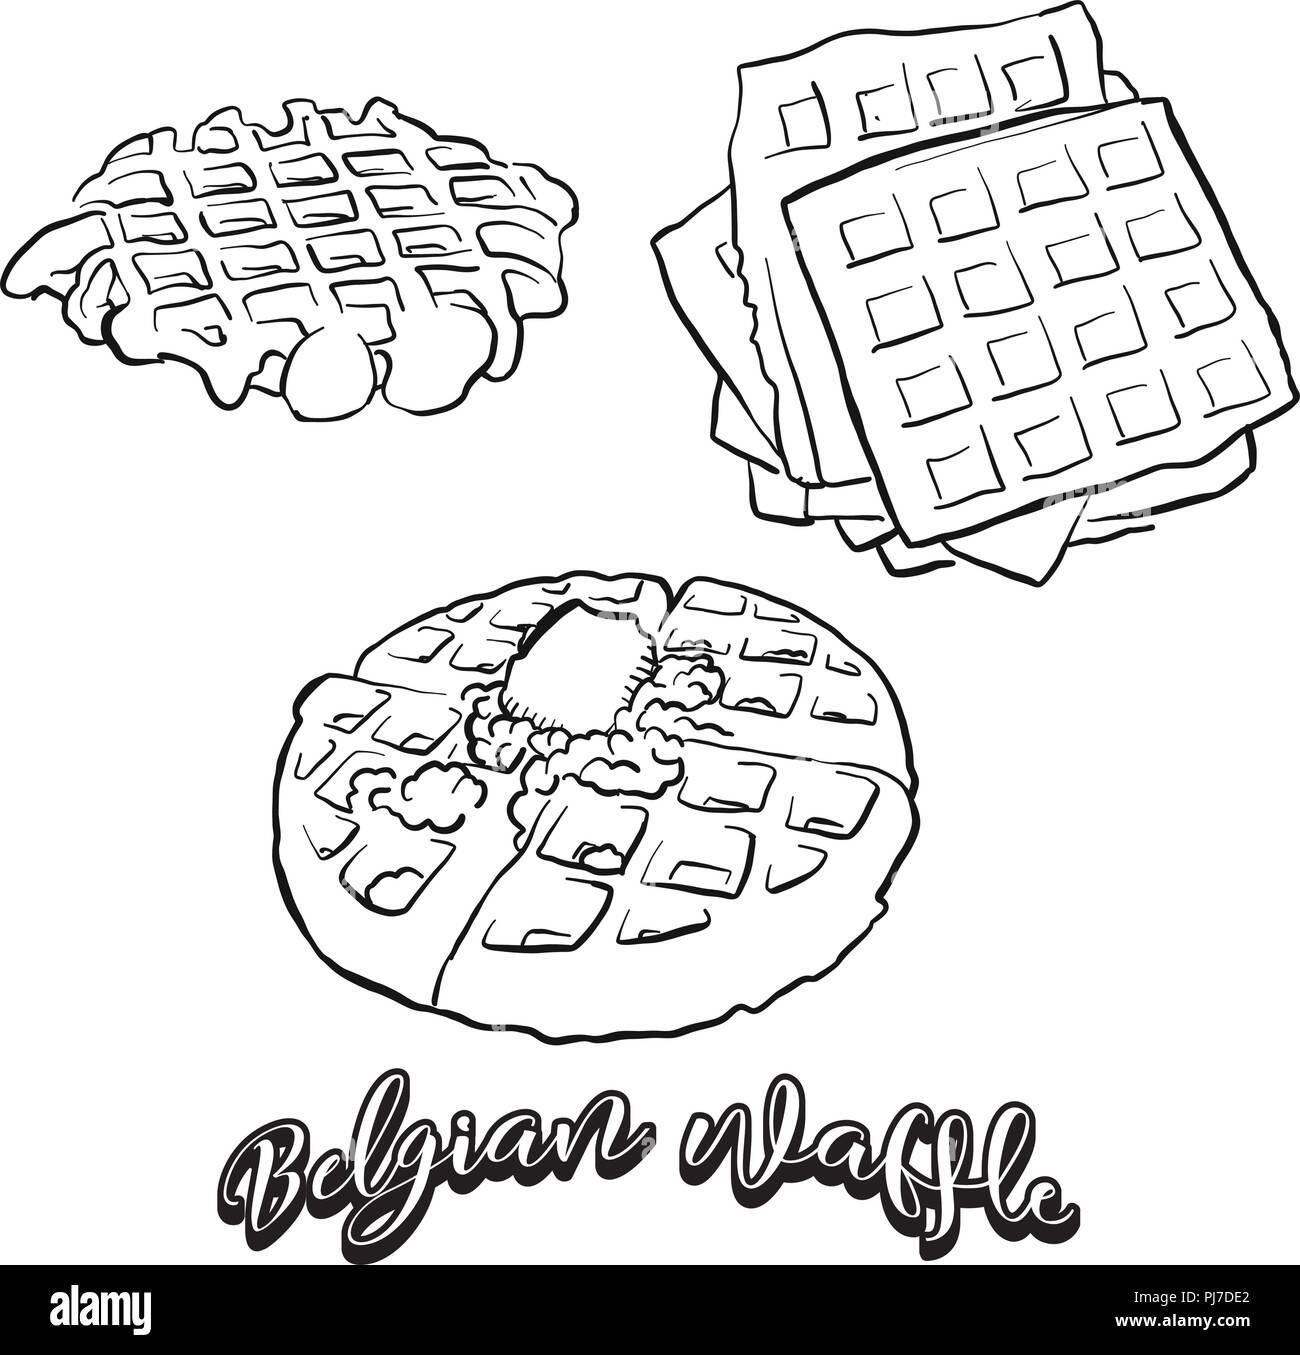 Hand gezeichnete Skizze der Belgische Waffel Brot. Vektor Zeichnung von Waffeln Essen, in der Regel in Belgien bekannt. Brot Abbildung Serie. Stock Vektor